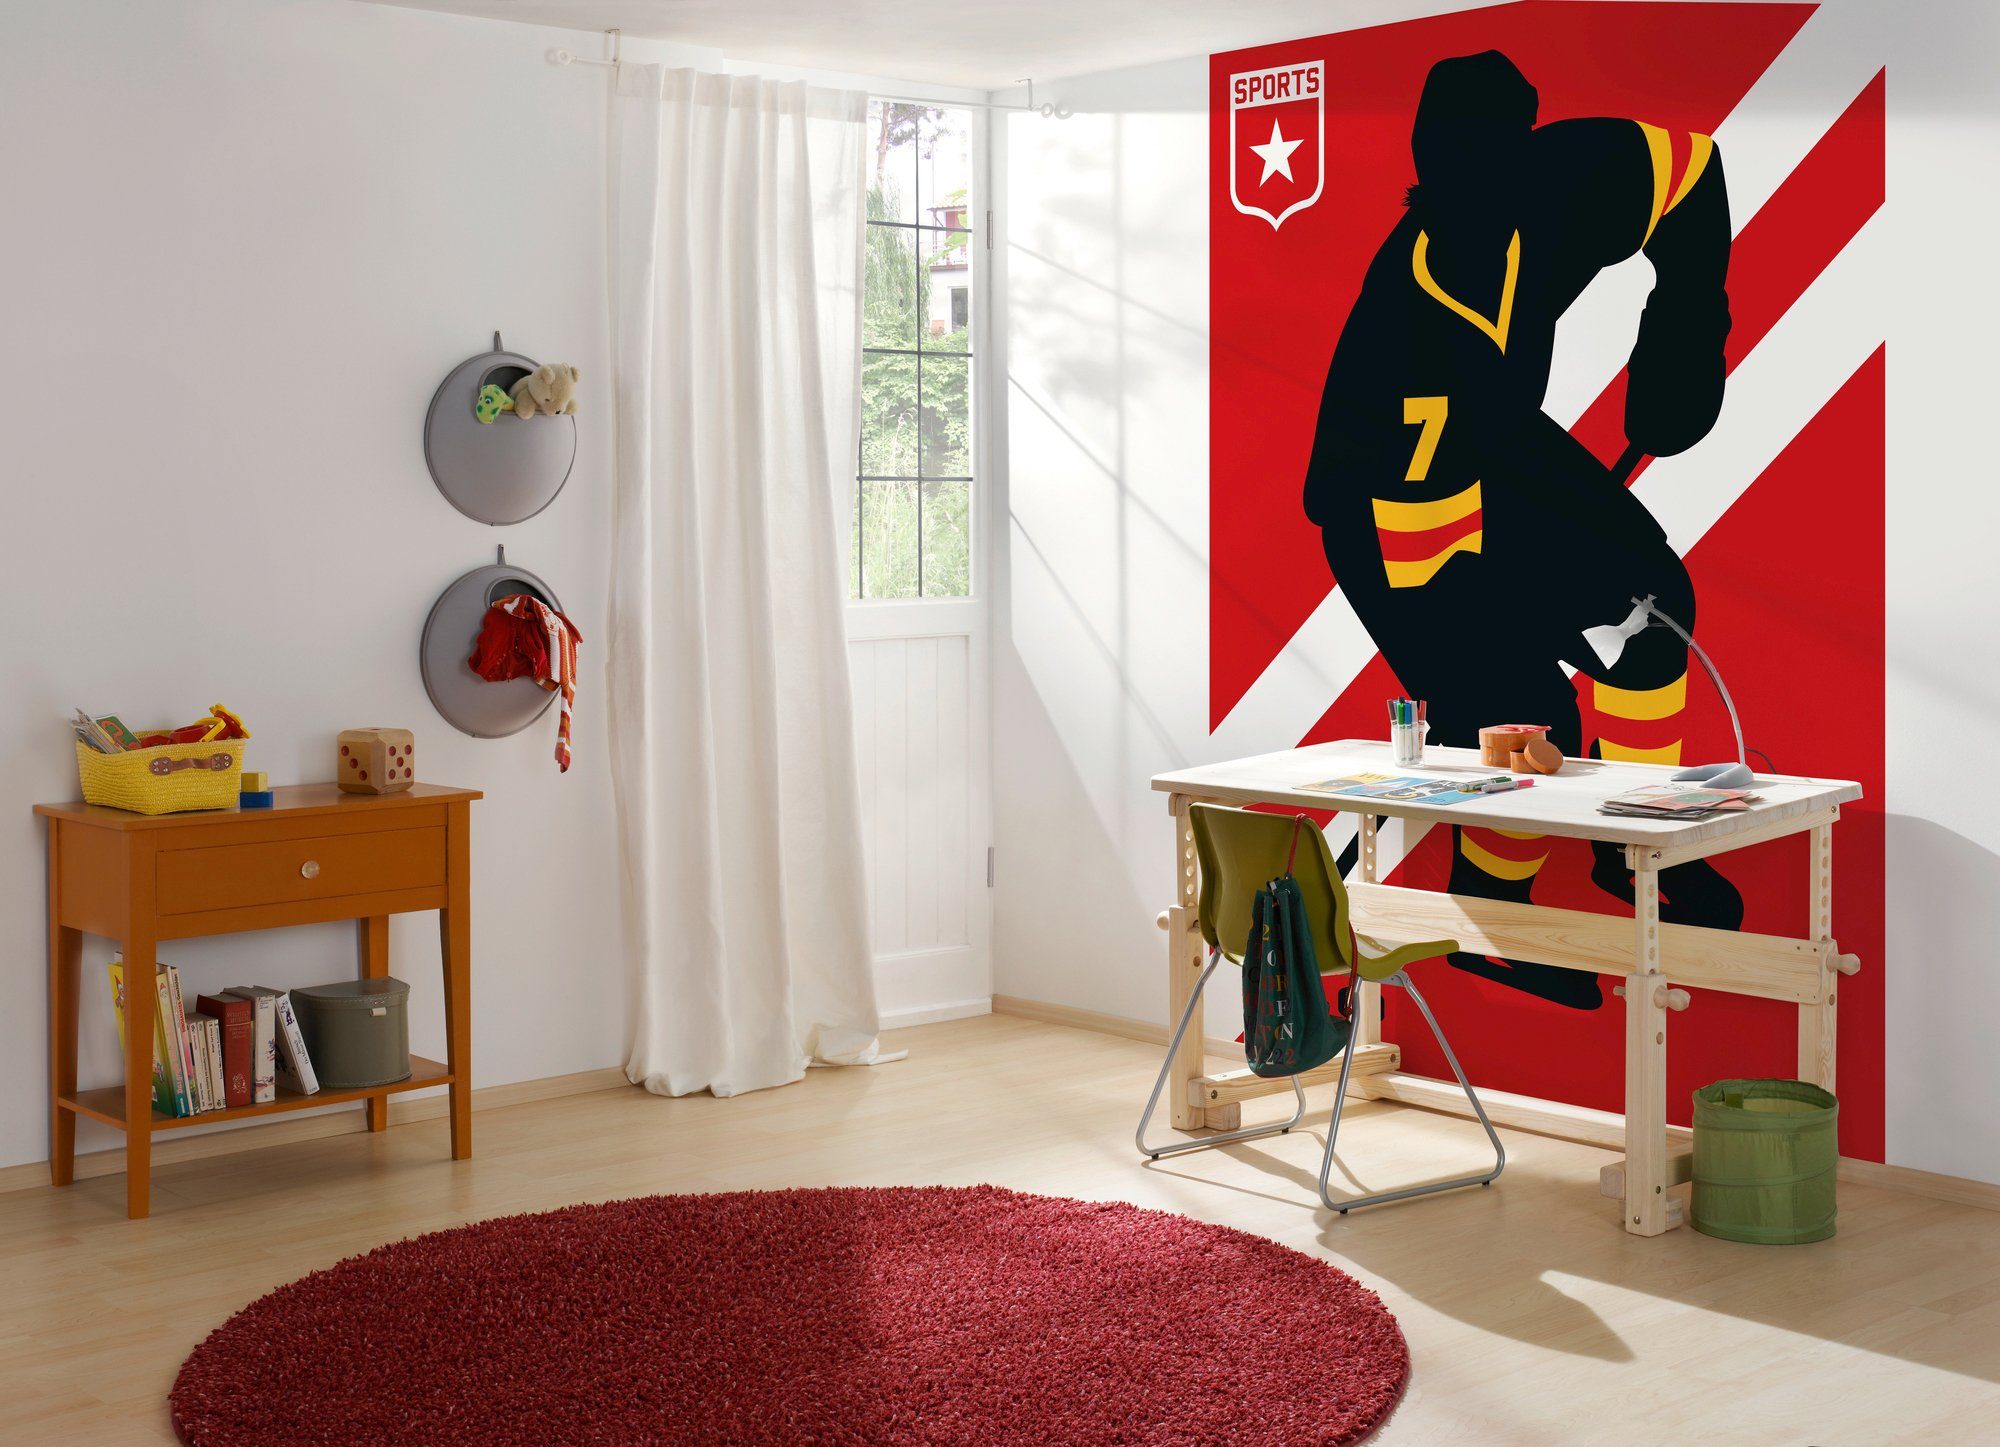 2 IceHockey, St), walls Fototapete ARTist Schräge Vlies, living (Set, Wand,